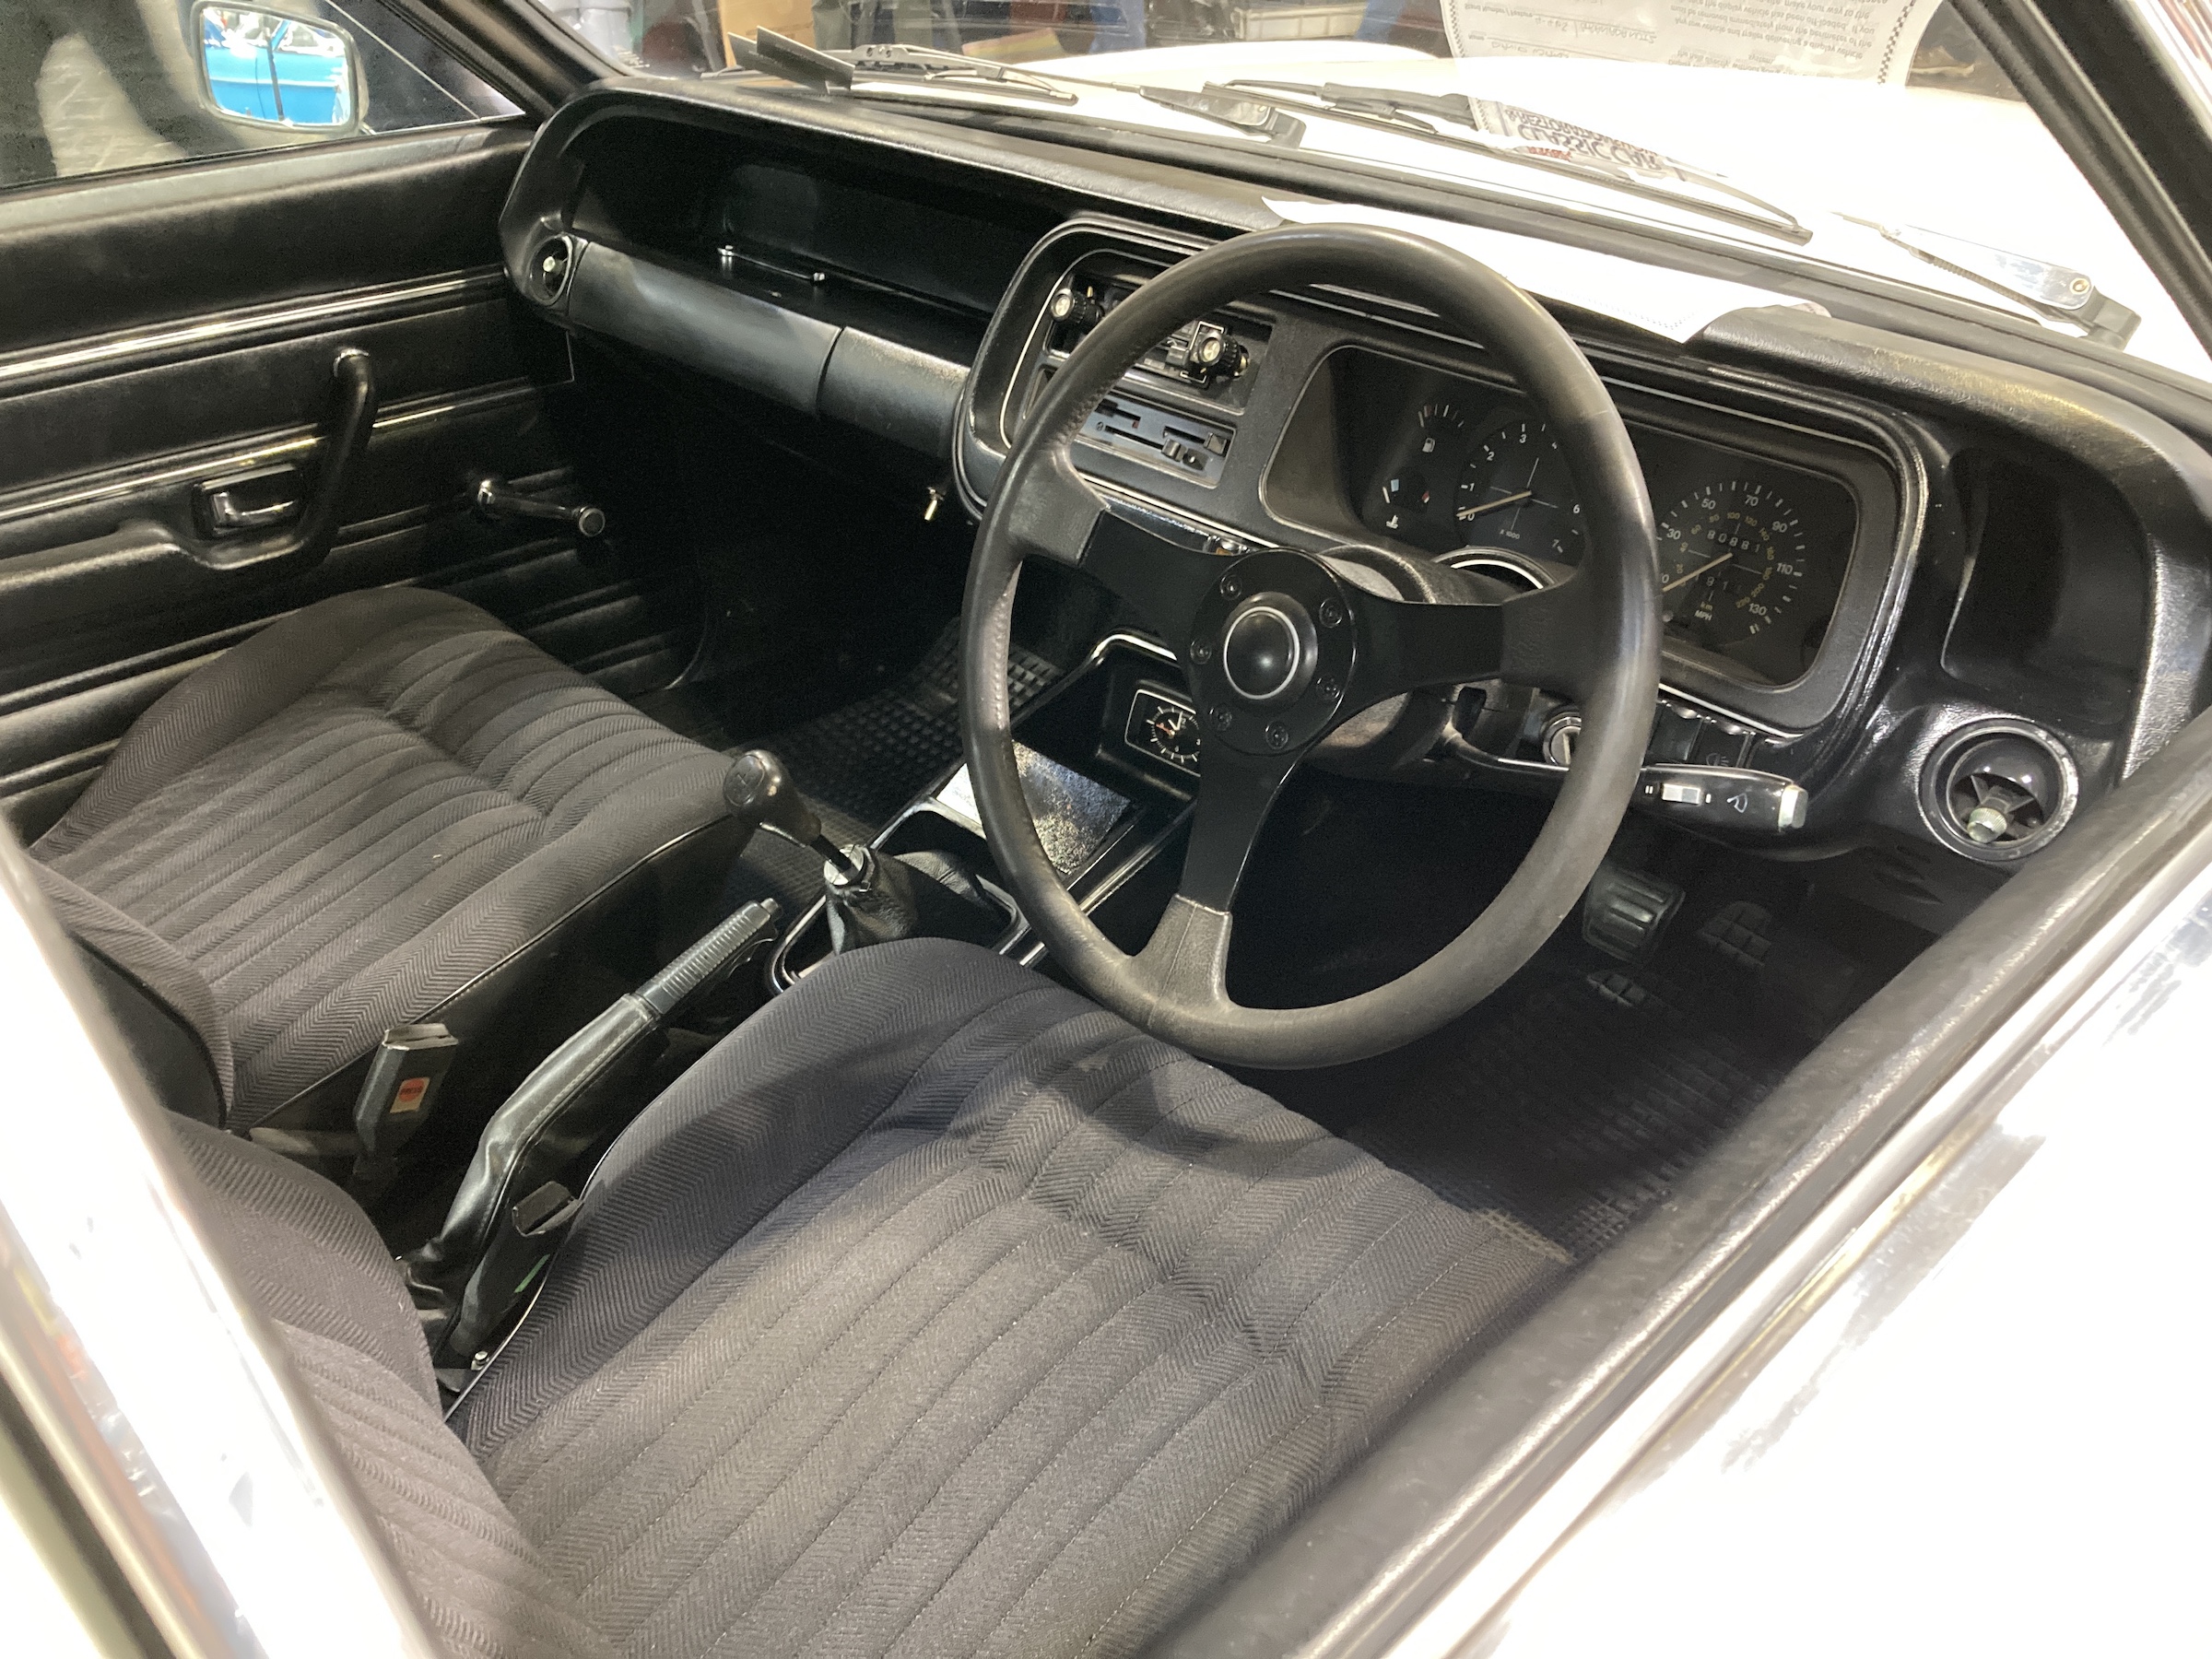 Ford Granada S interior